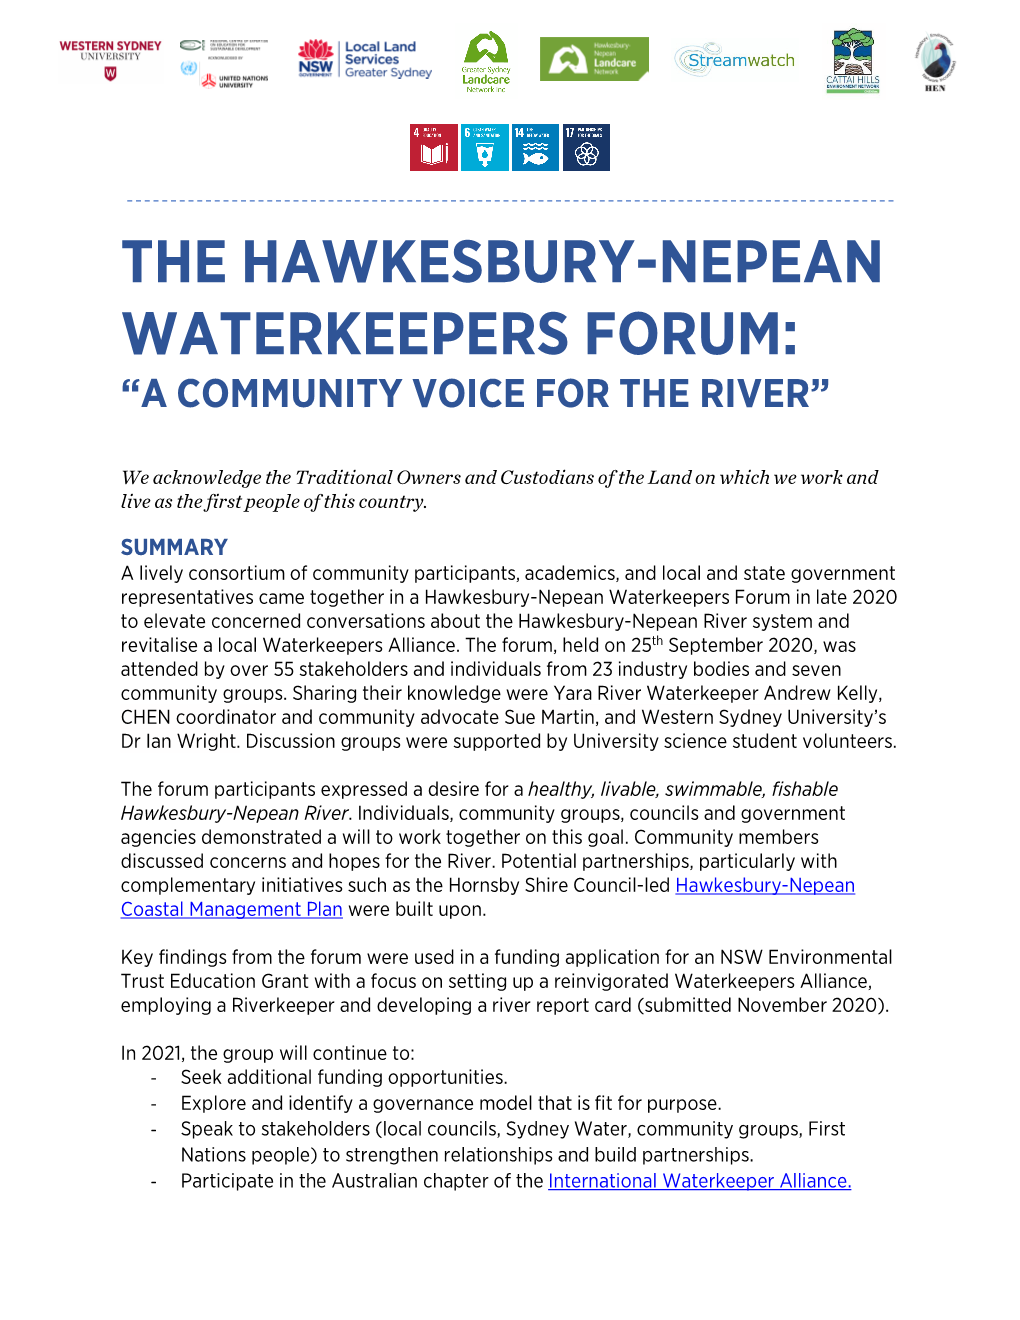 Hawkesbury-Nepean Waterkeeper Forum